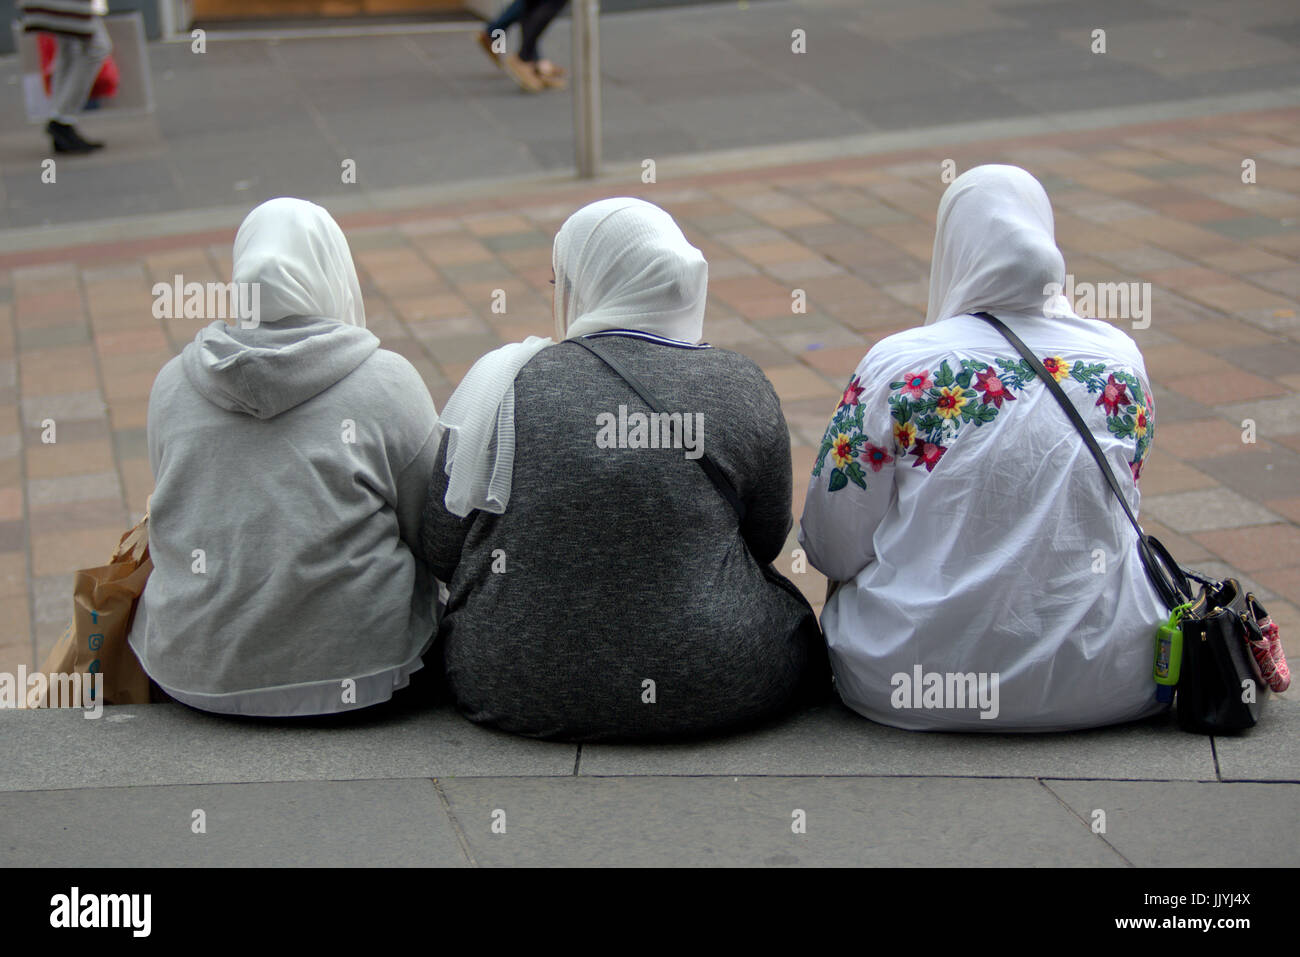 Refugiados asiáticos visten el Hijab pañuelo sobre calle escena cotidiana en el REINO UNIDO Foto de stock